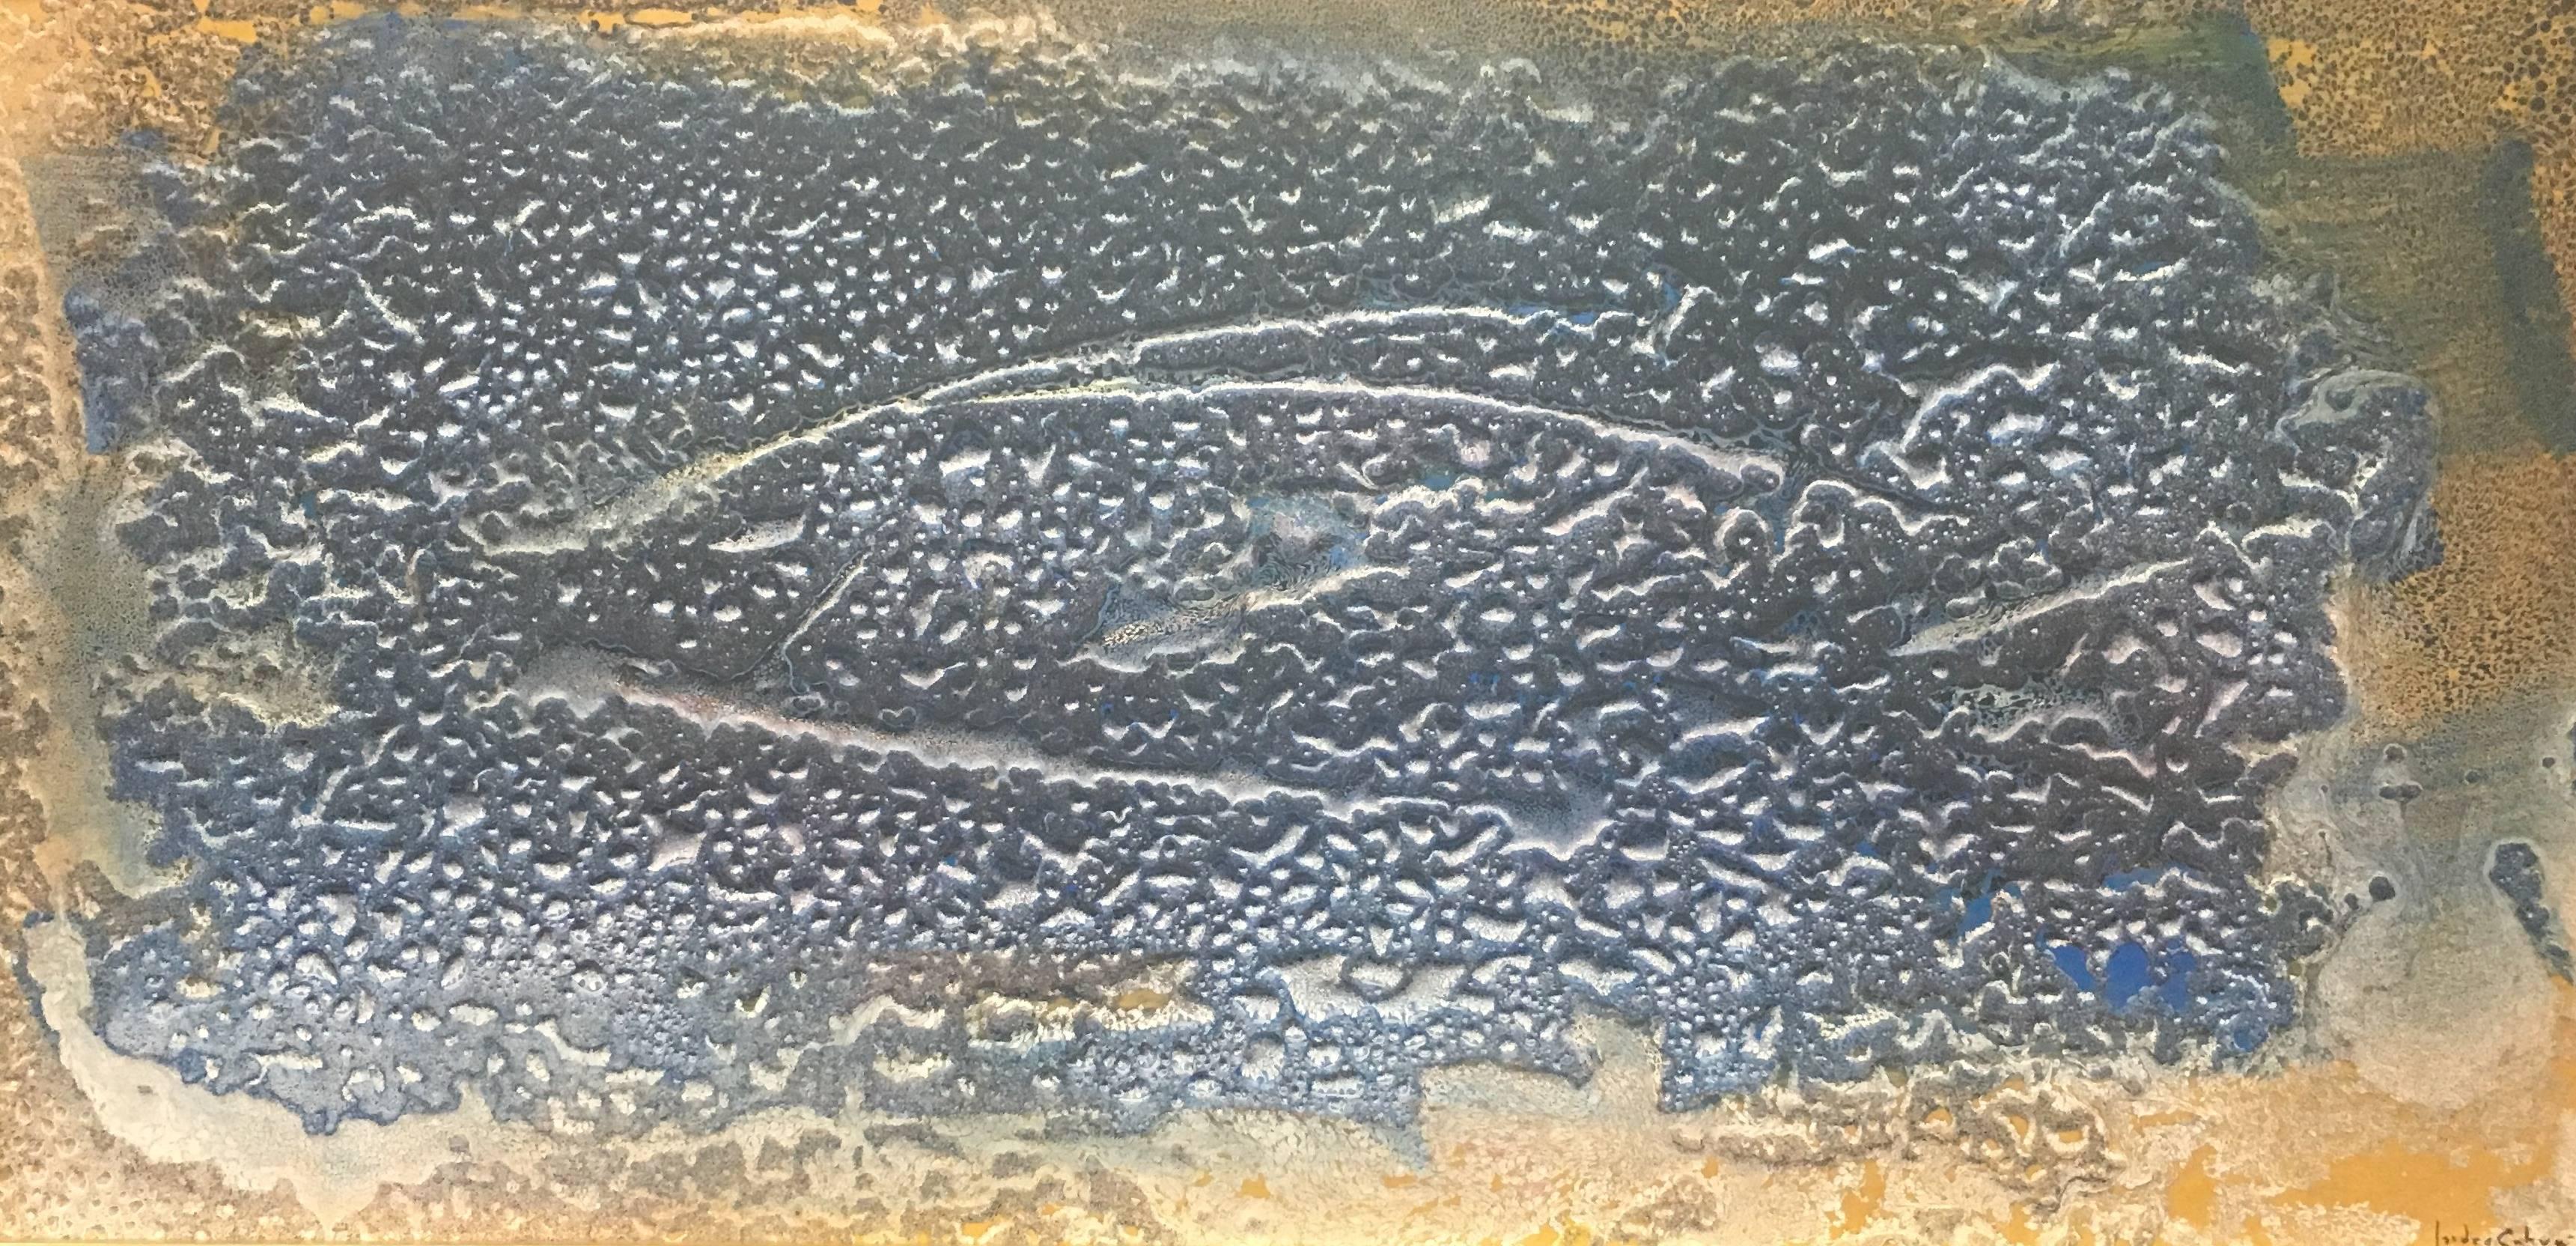 poissons de la mer   original abstrait acrylique  peinture 
Artistics de l'artiste espagnol ISIDRO CAHUE.
Acrylique sur bois
Un état parfait

La personnalité de l'artiste se reflète dans différents domaines de l'art. Son souci du sujet, son